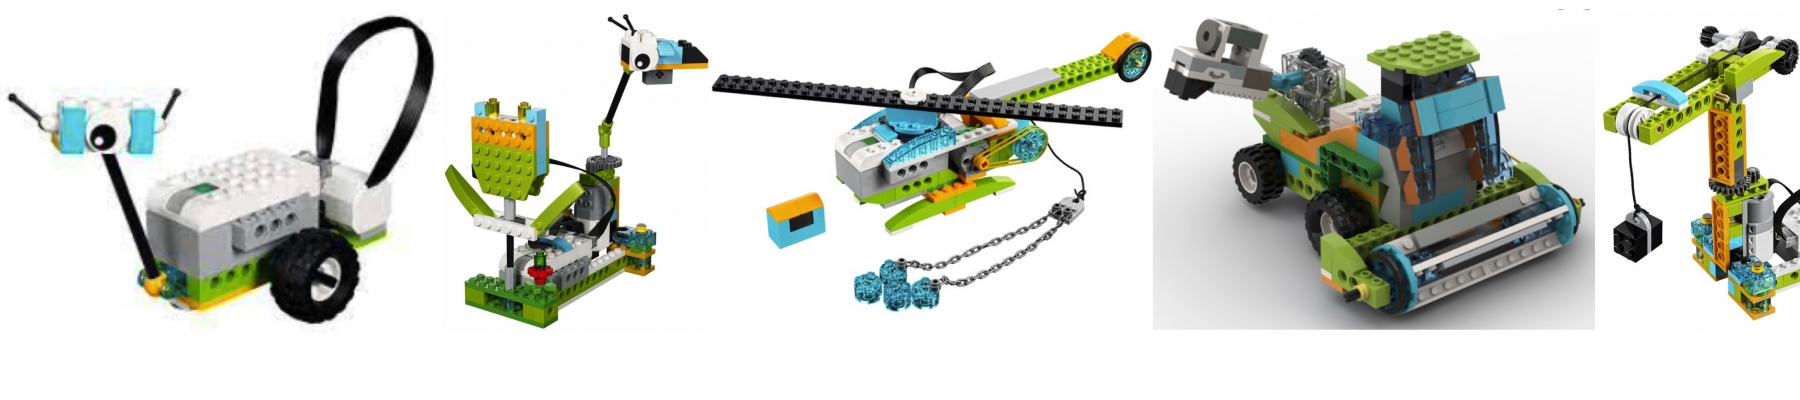 ROBOT BOUWEN MET LEGO WEDO   (LEEG)